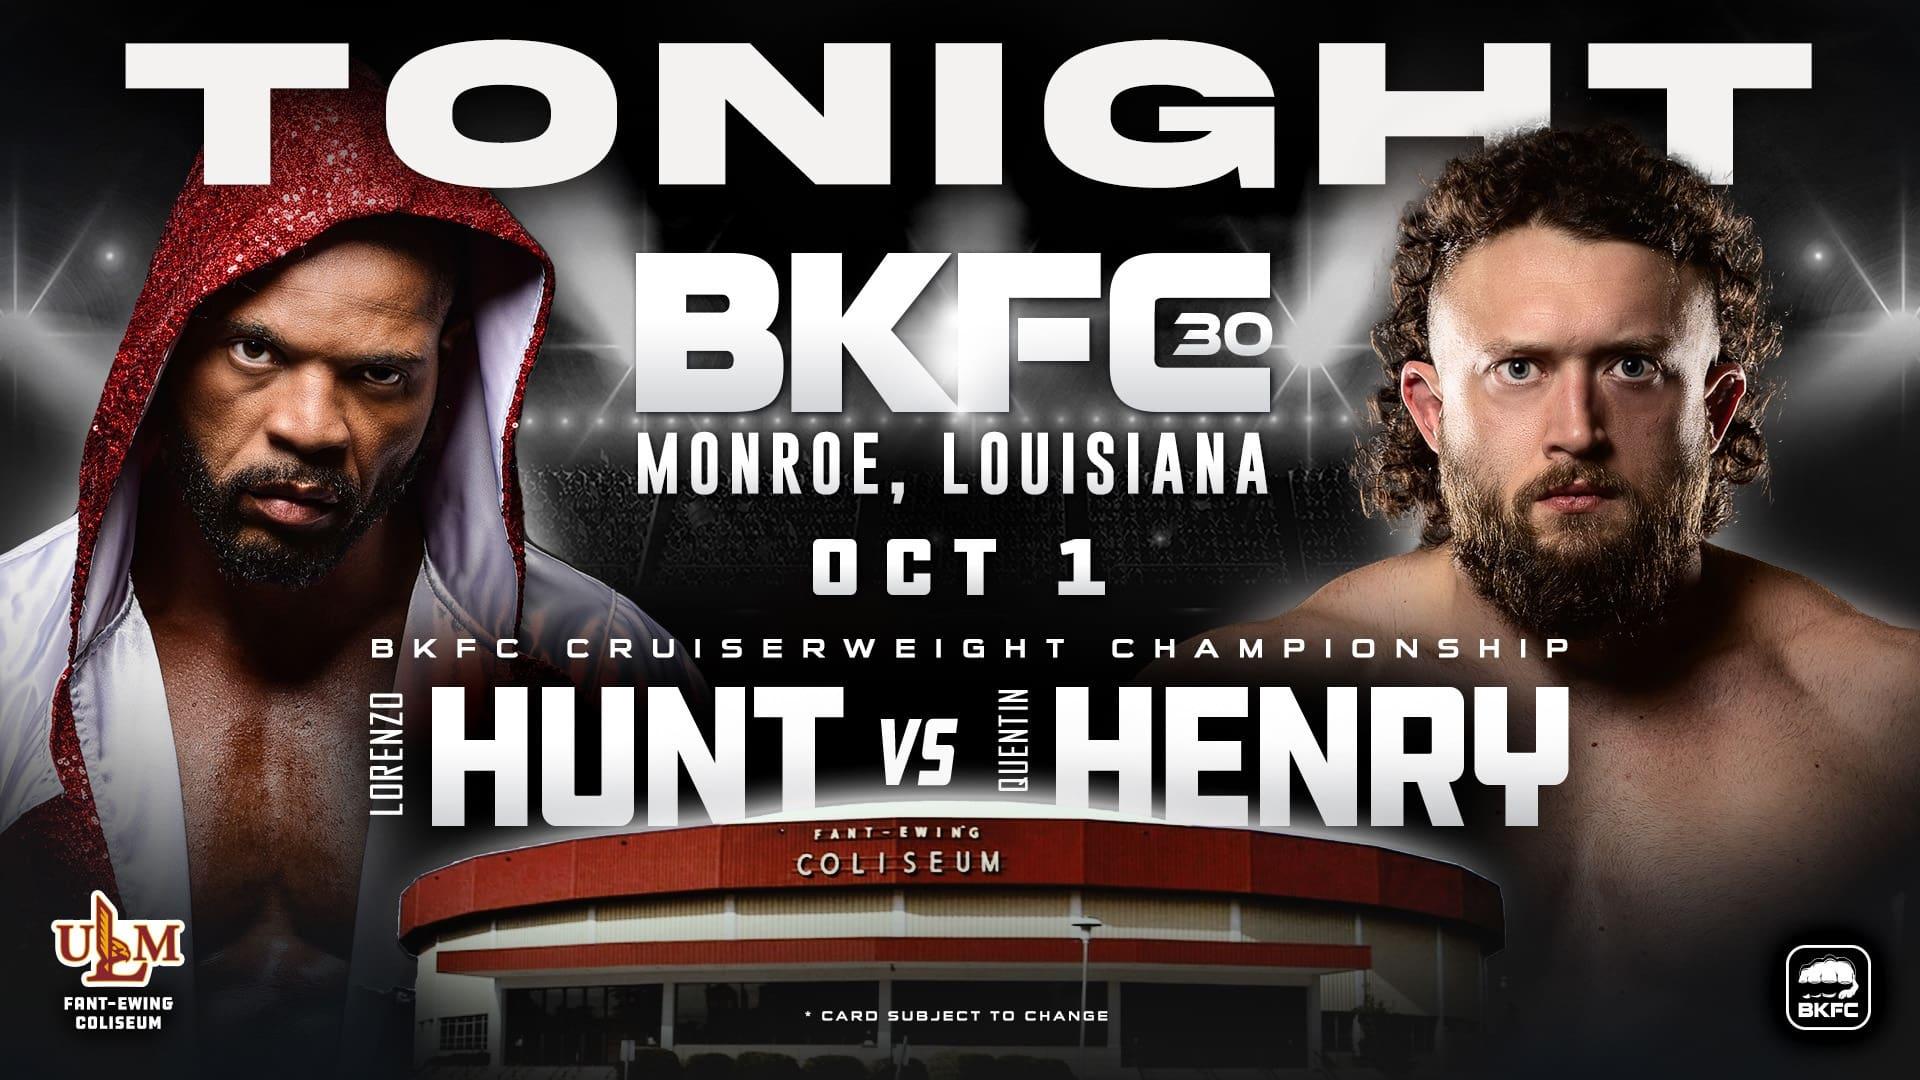 BKFC 30: Hunt vs Henry backdrop